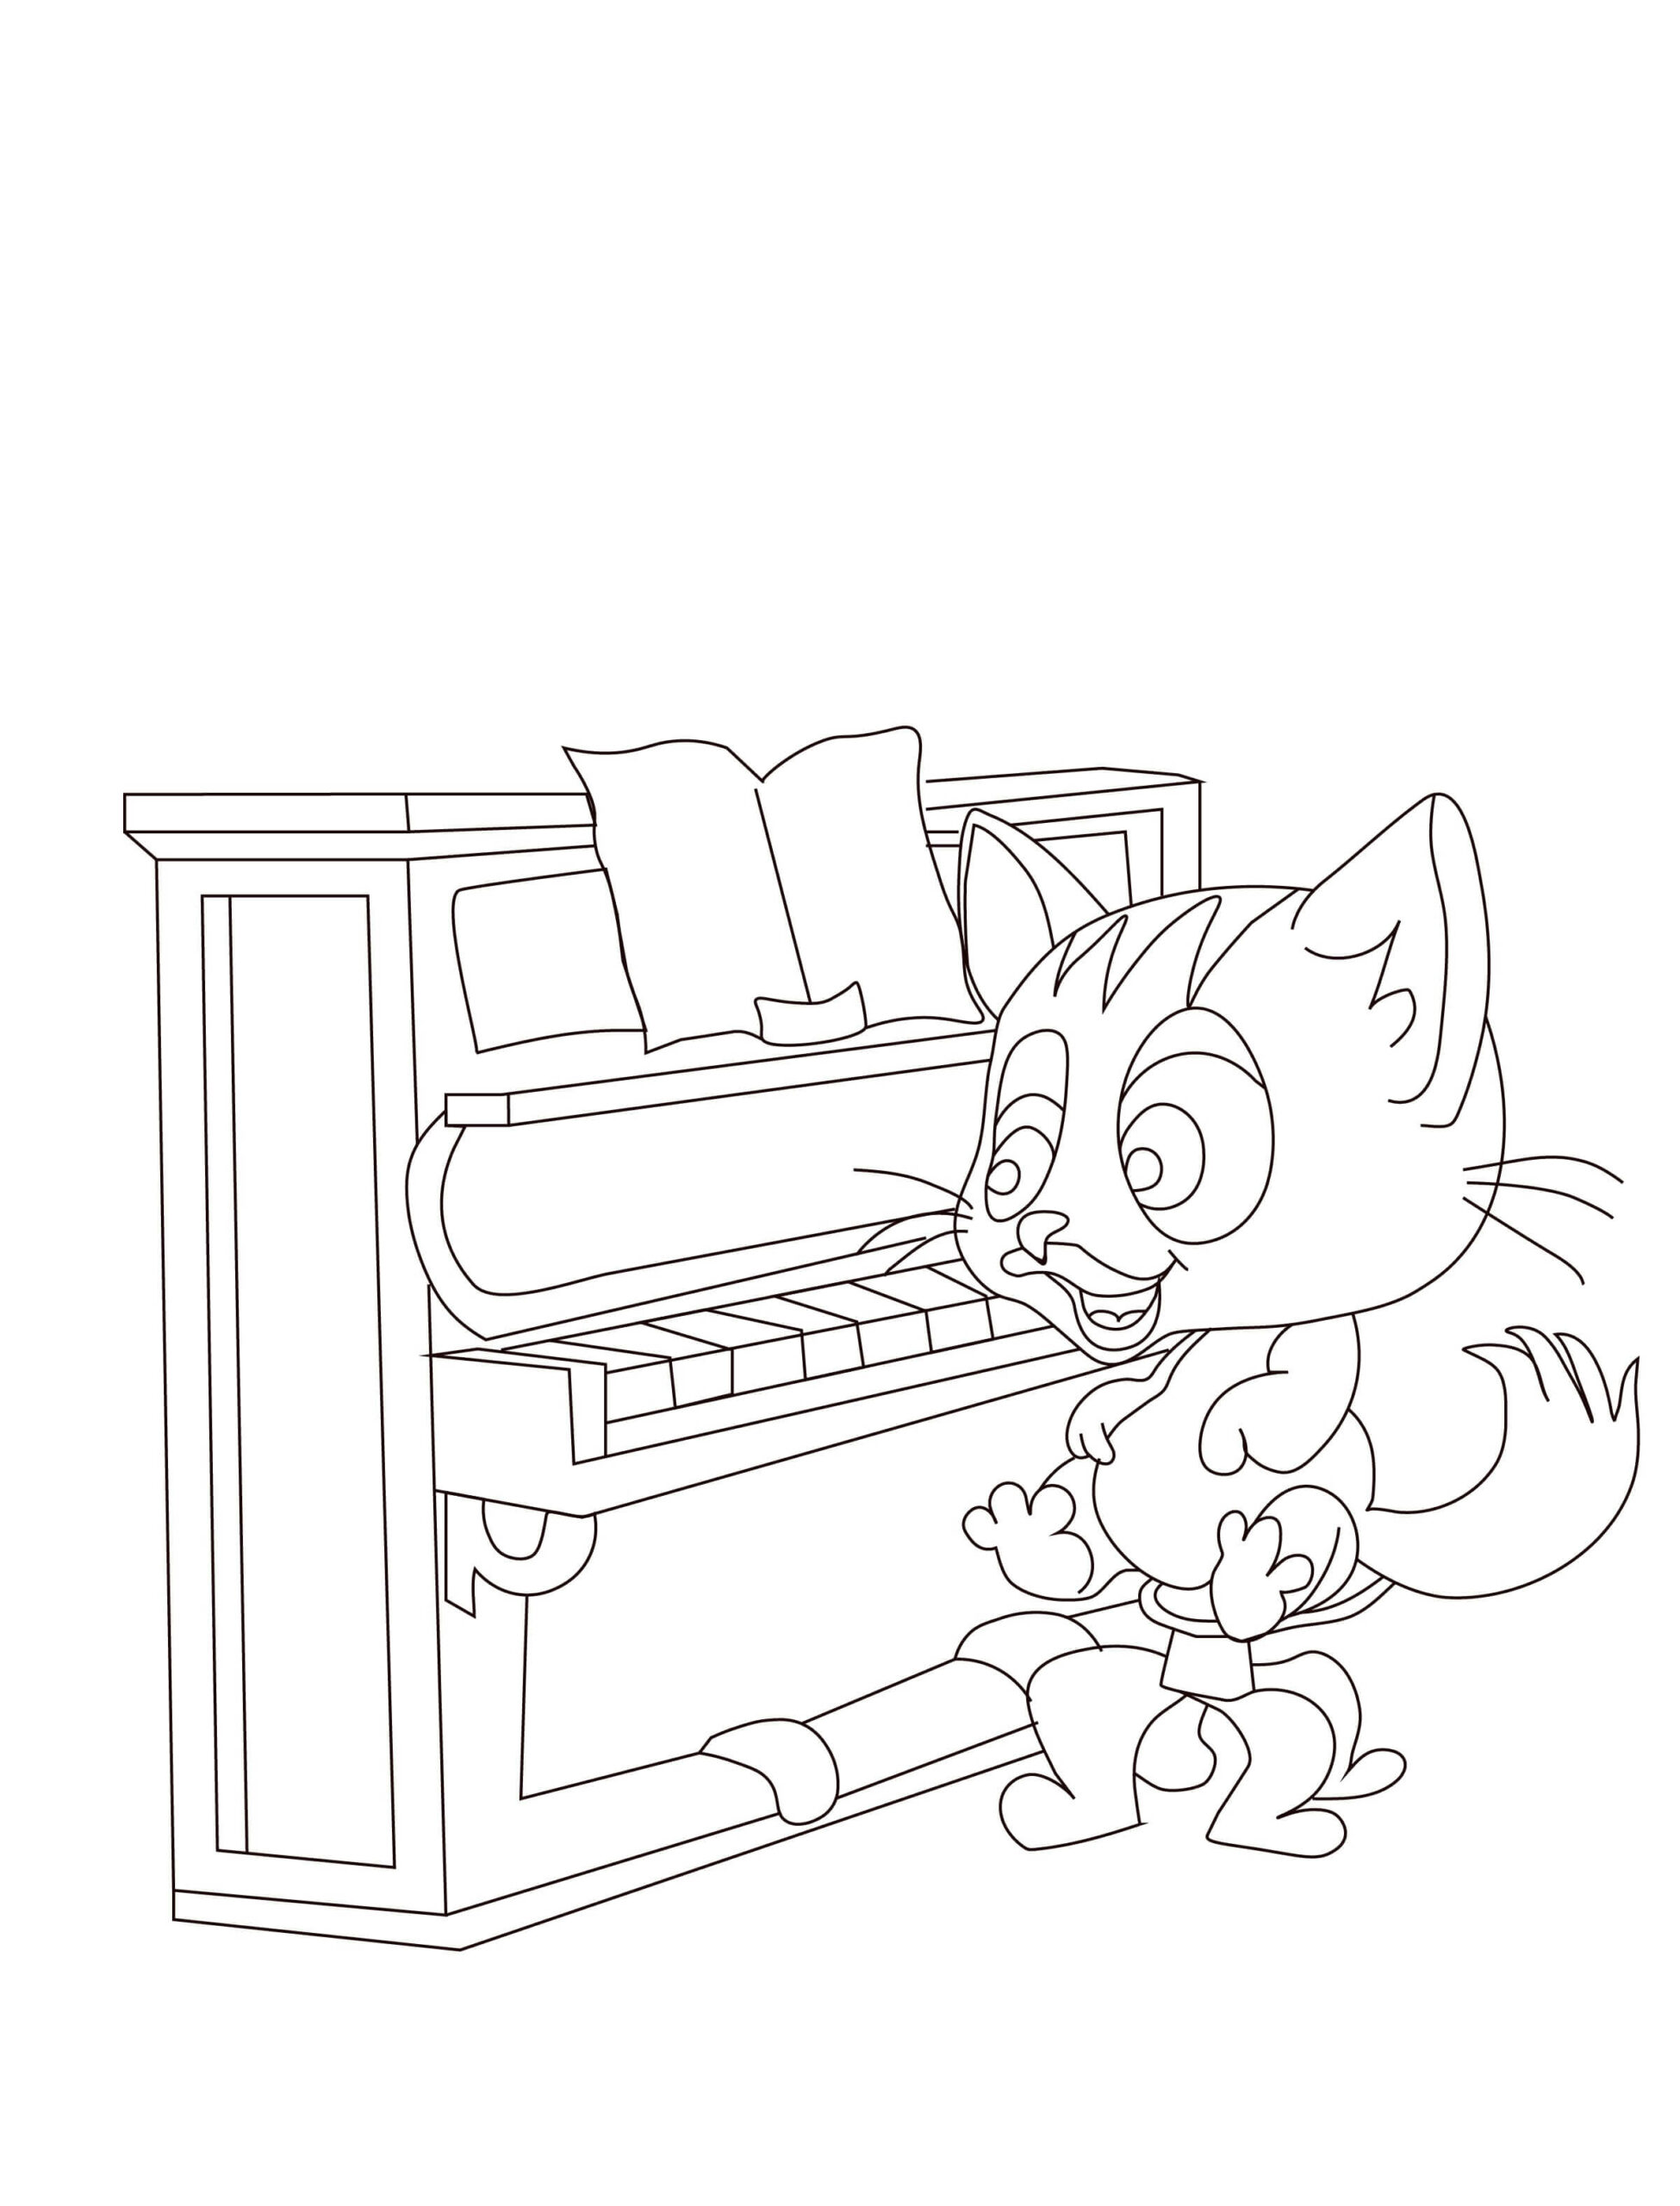 Le Chat Joue du Piano coloring page